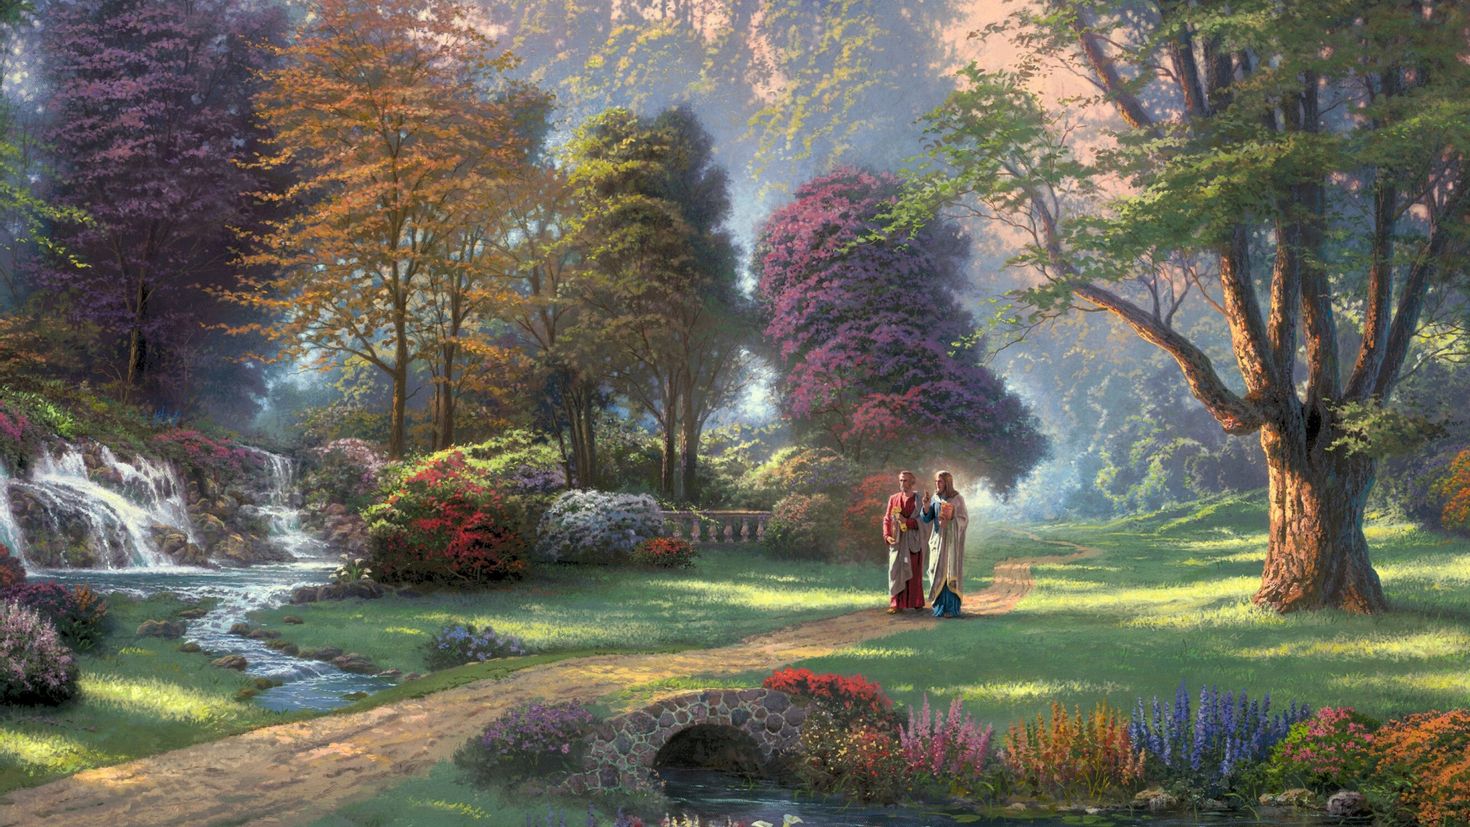 Художественные пейзажи. Томас Кинкаде художник сады. Томас Кинкейд картины сады. Райский сад *художник Thomas Kinkade. Томас Кинкейд рай Пейзажная живопись.